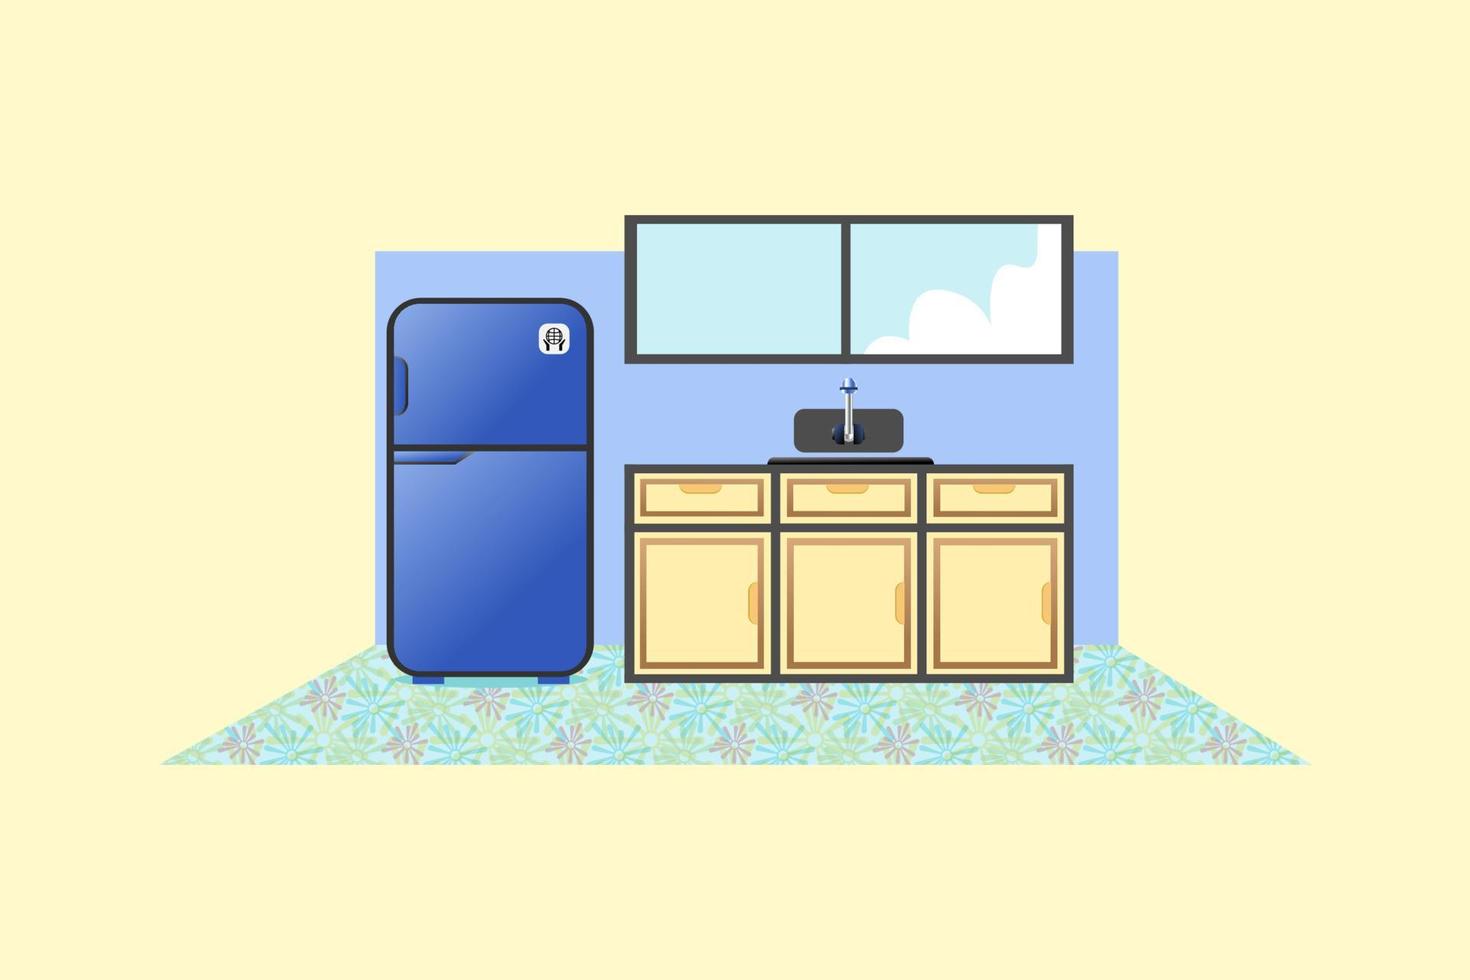 ilustração do interior da cozinha com geladeira, pia, janela, fogão e armário vetor